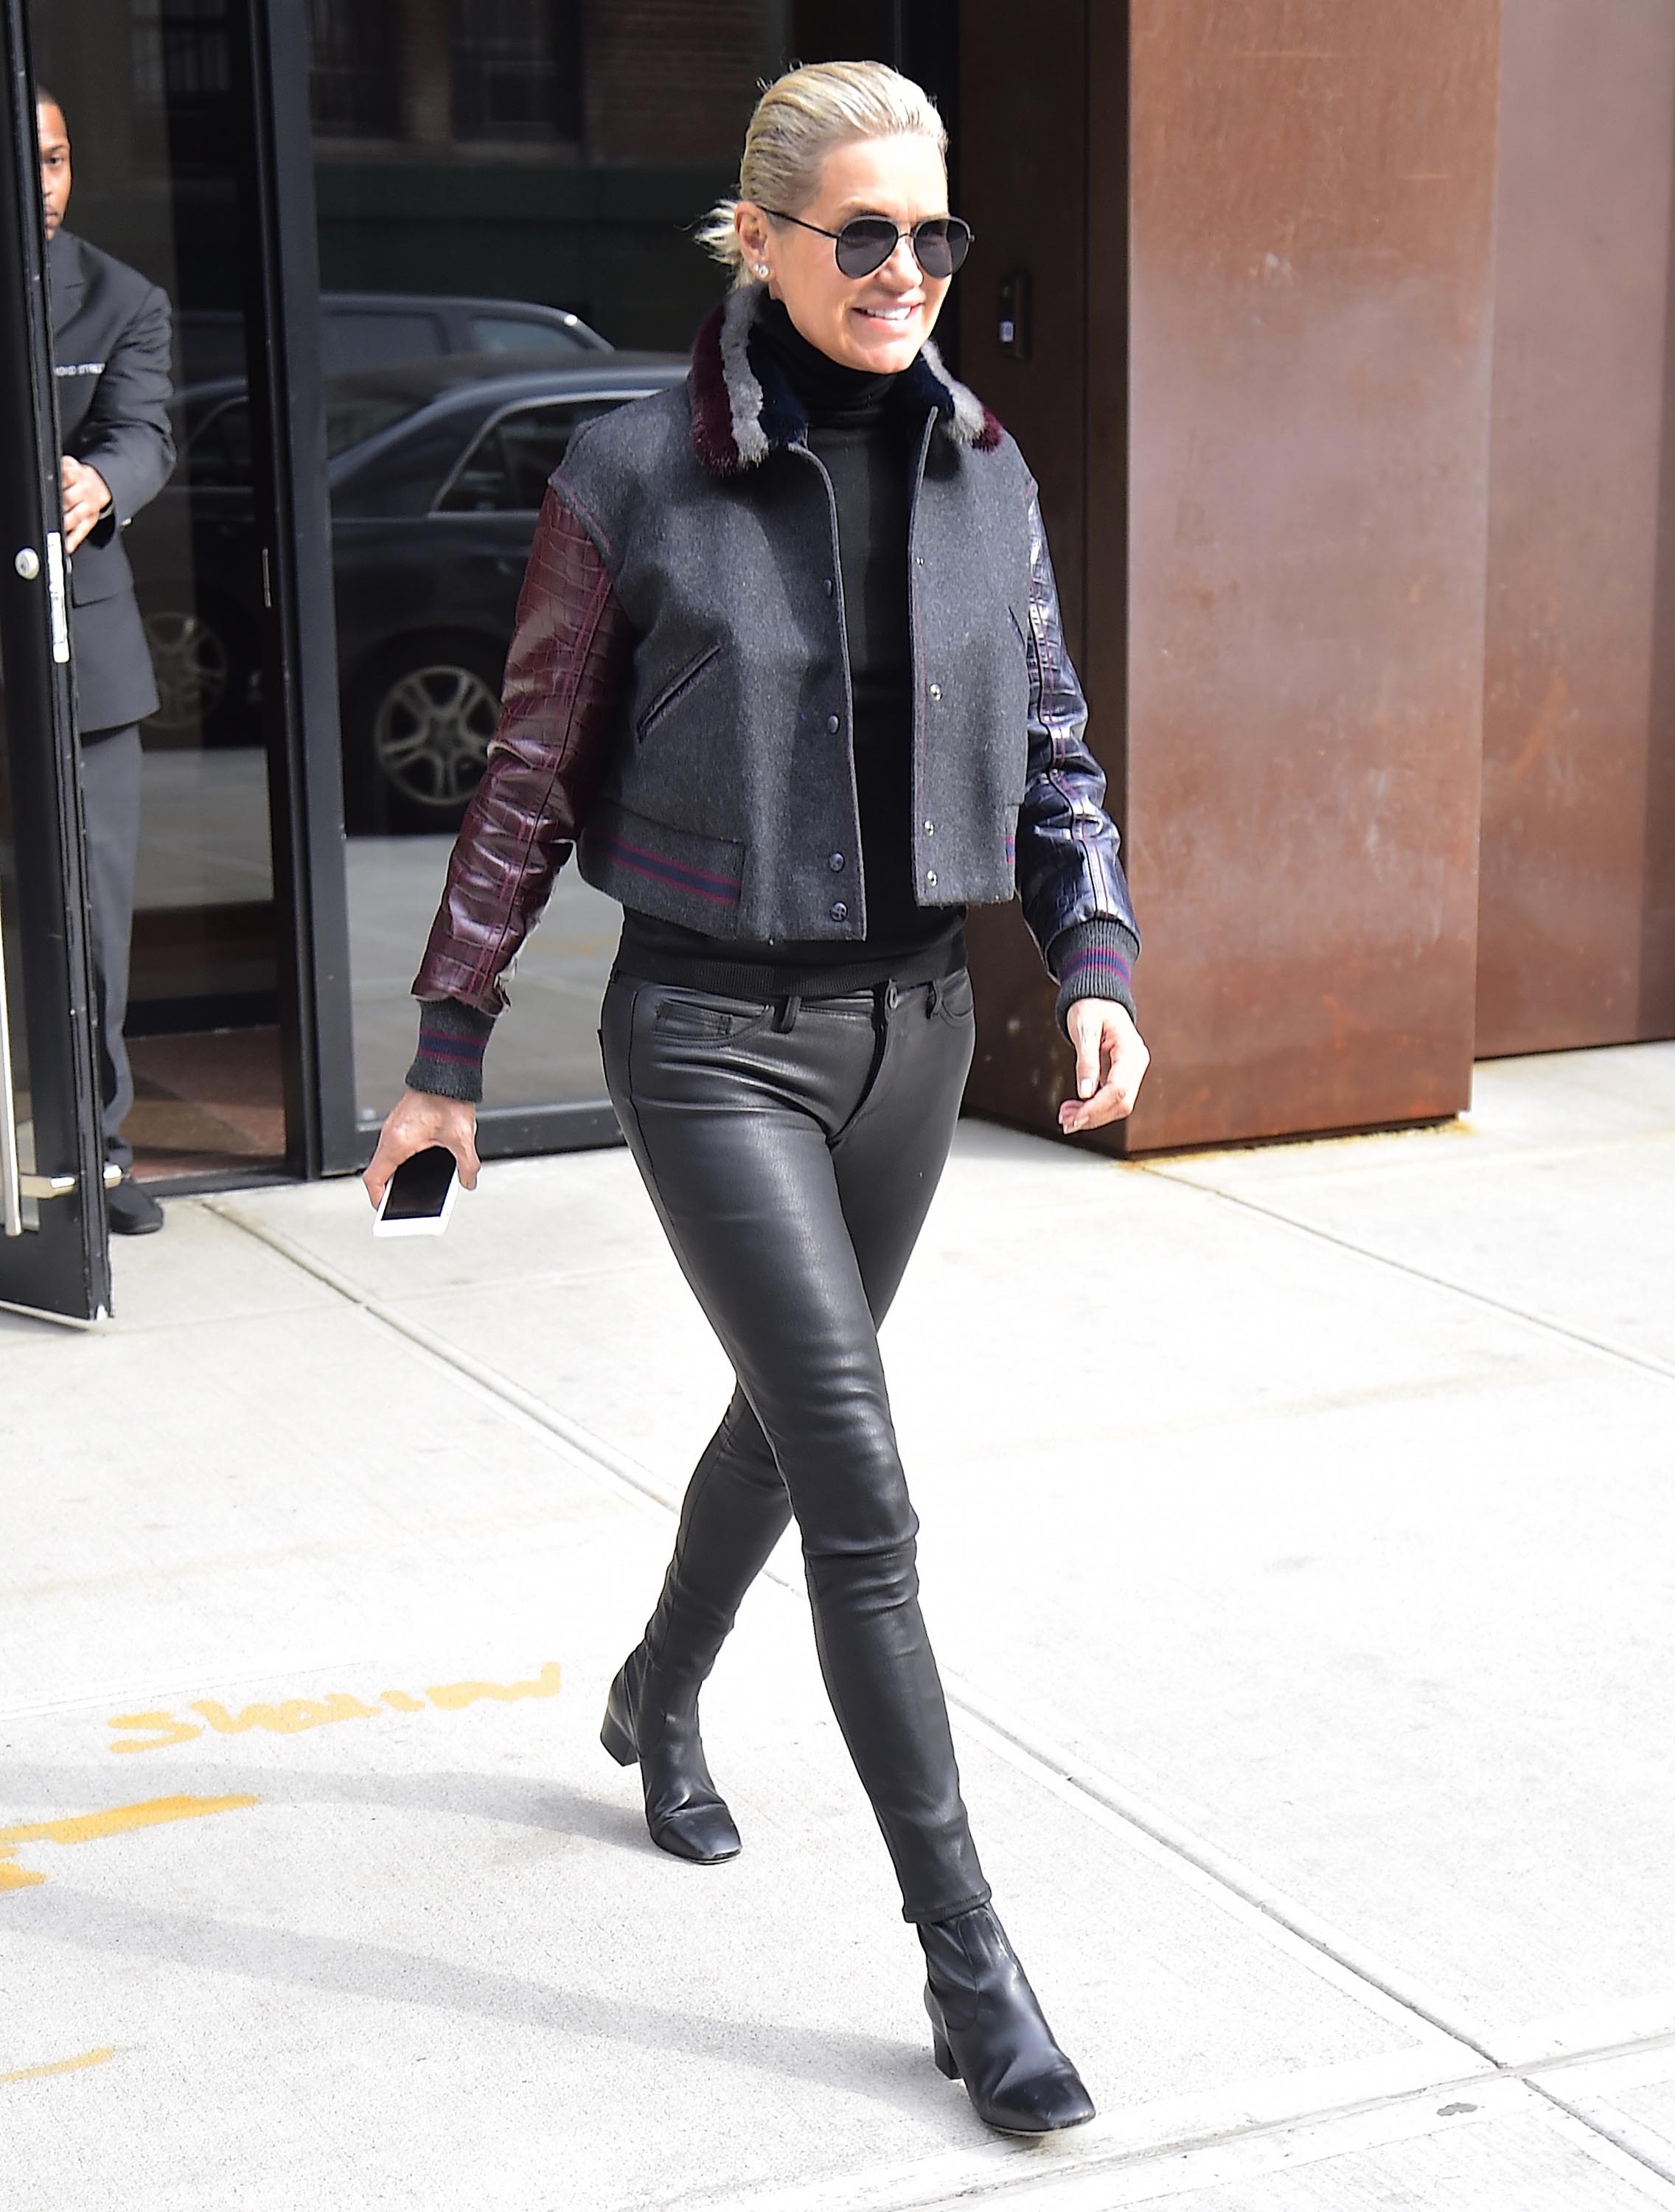 Yolanda Hadid is seen in NYC